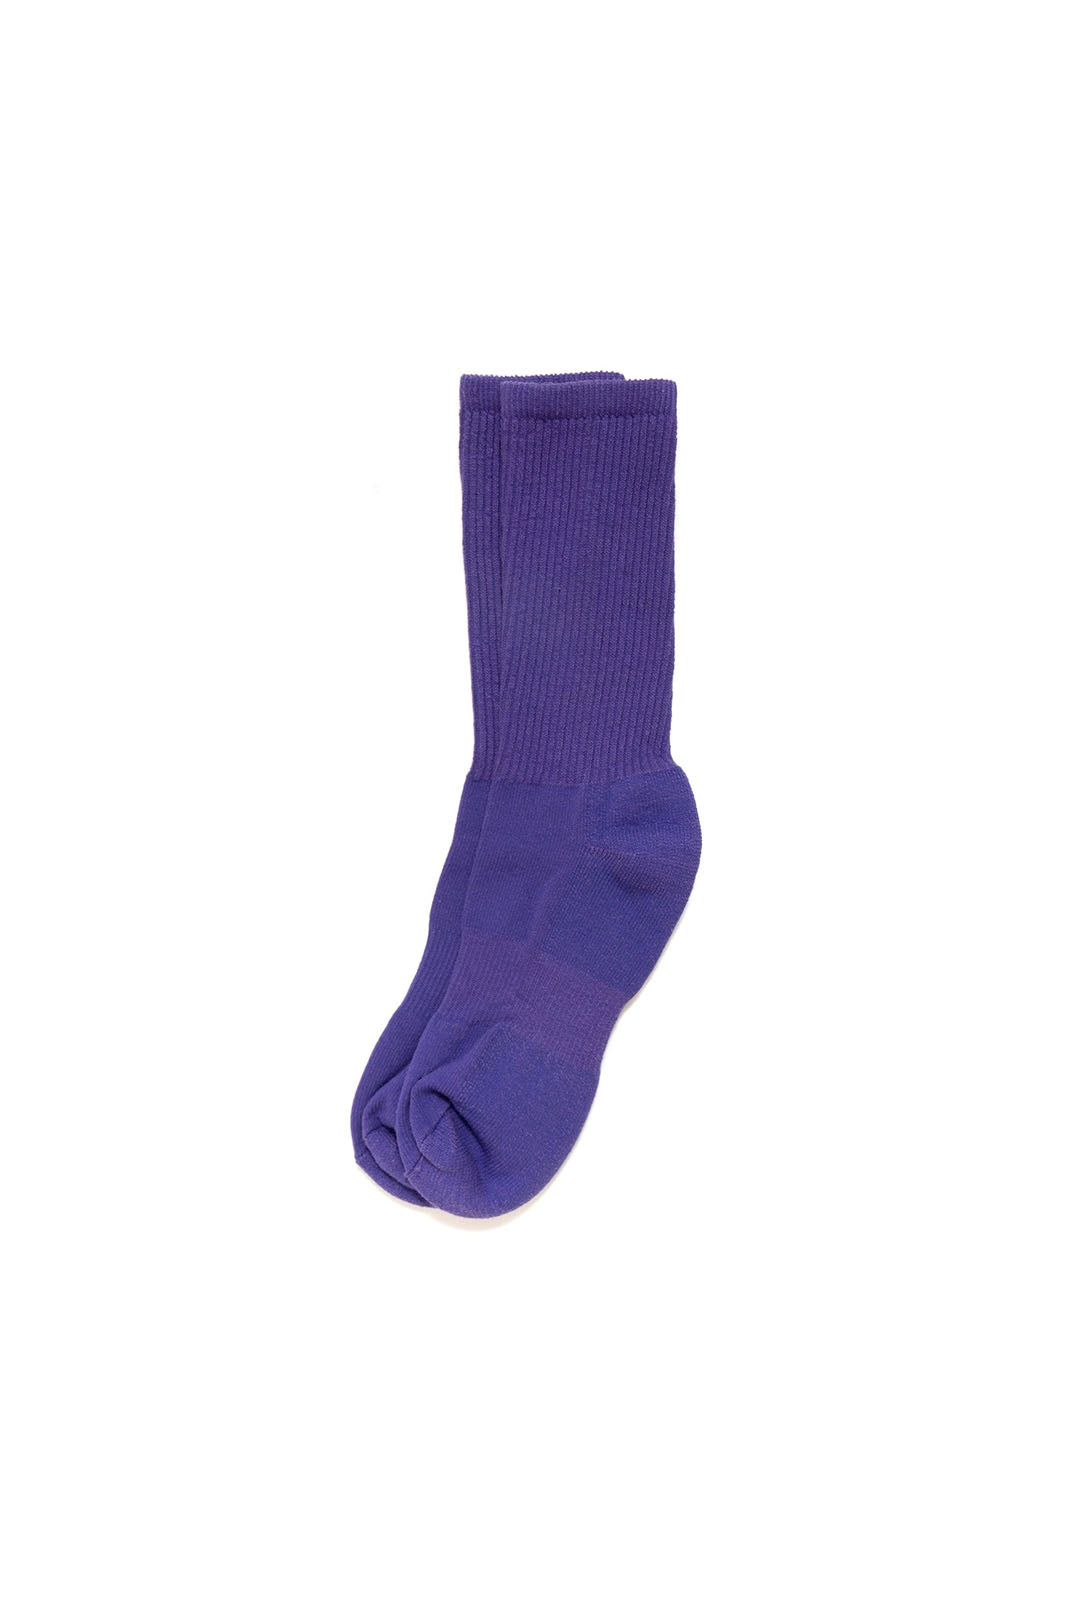 Mil-Spec Sport Sock - Violet